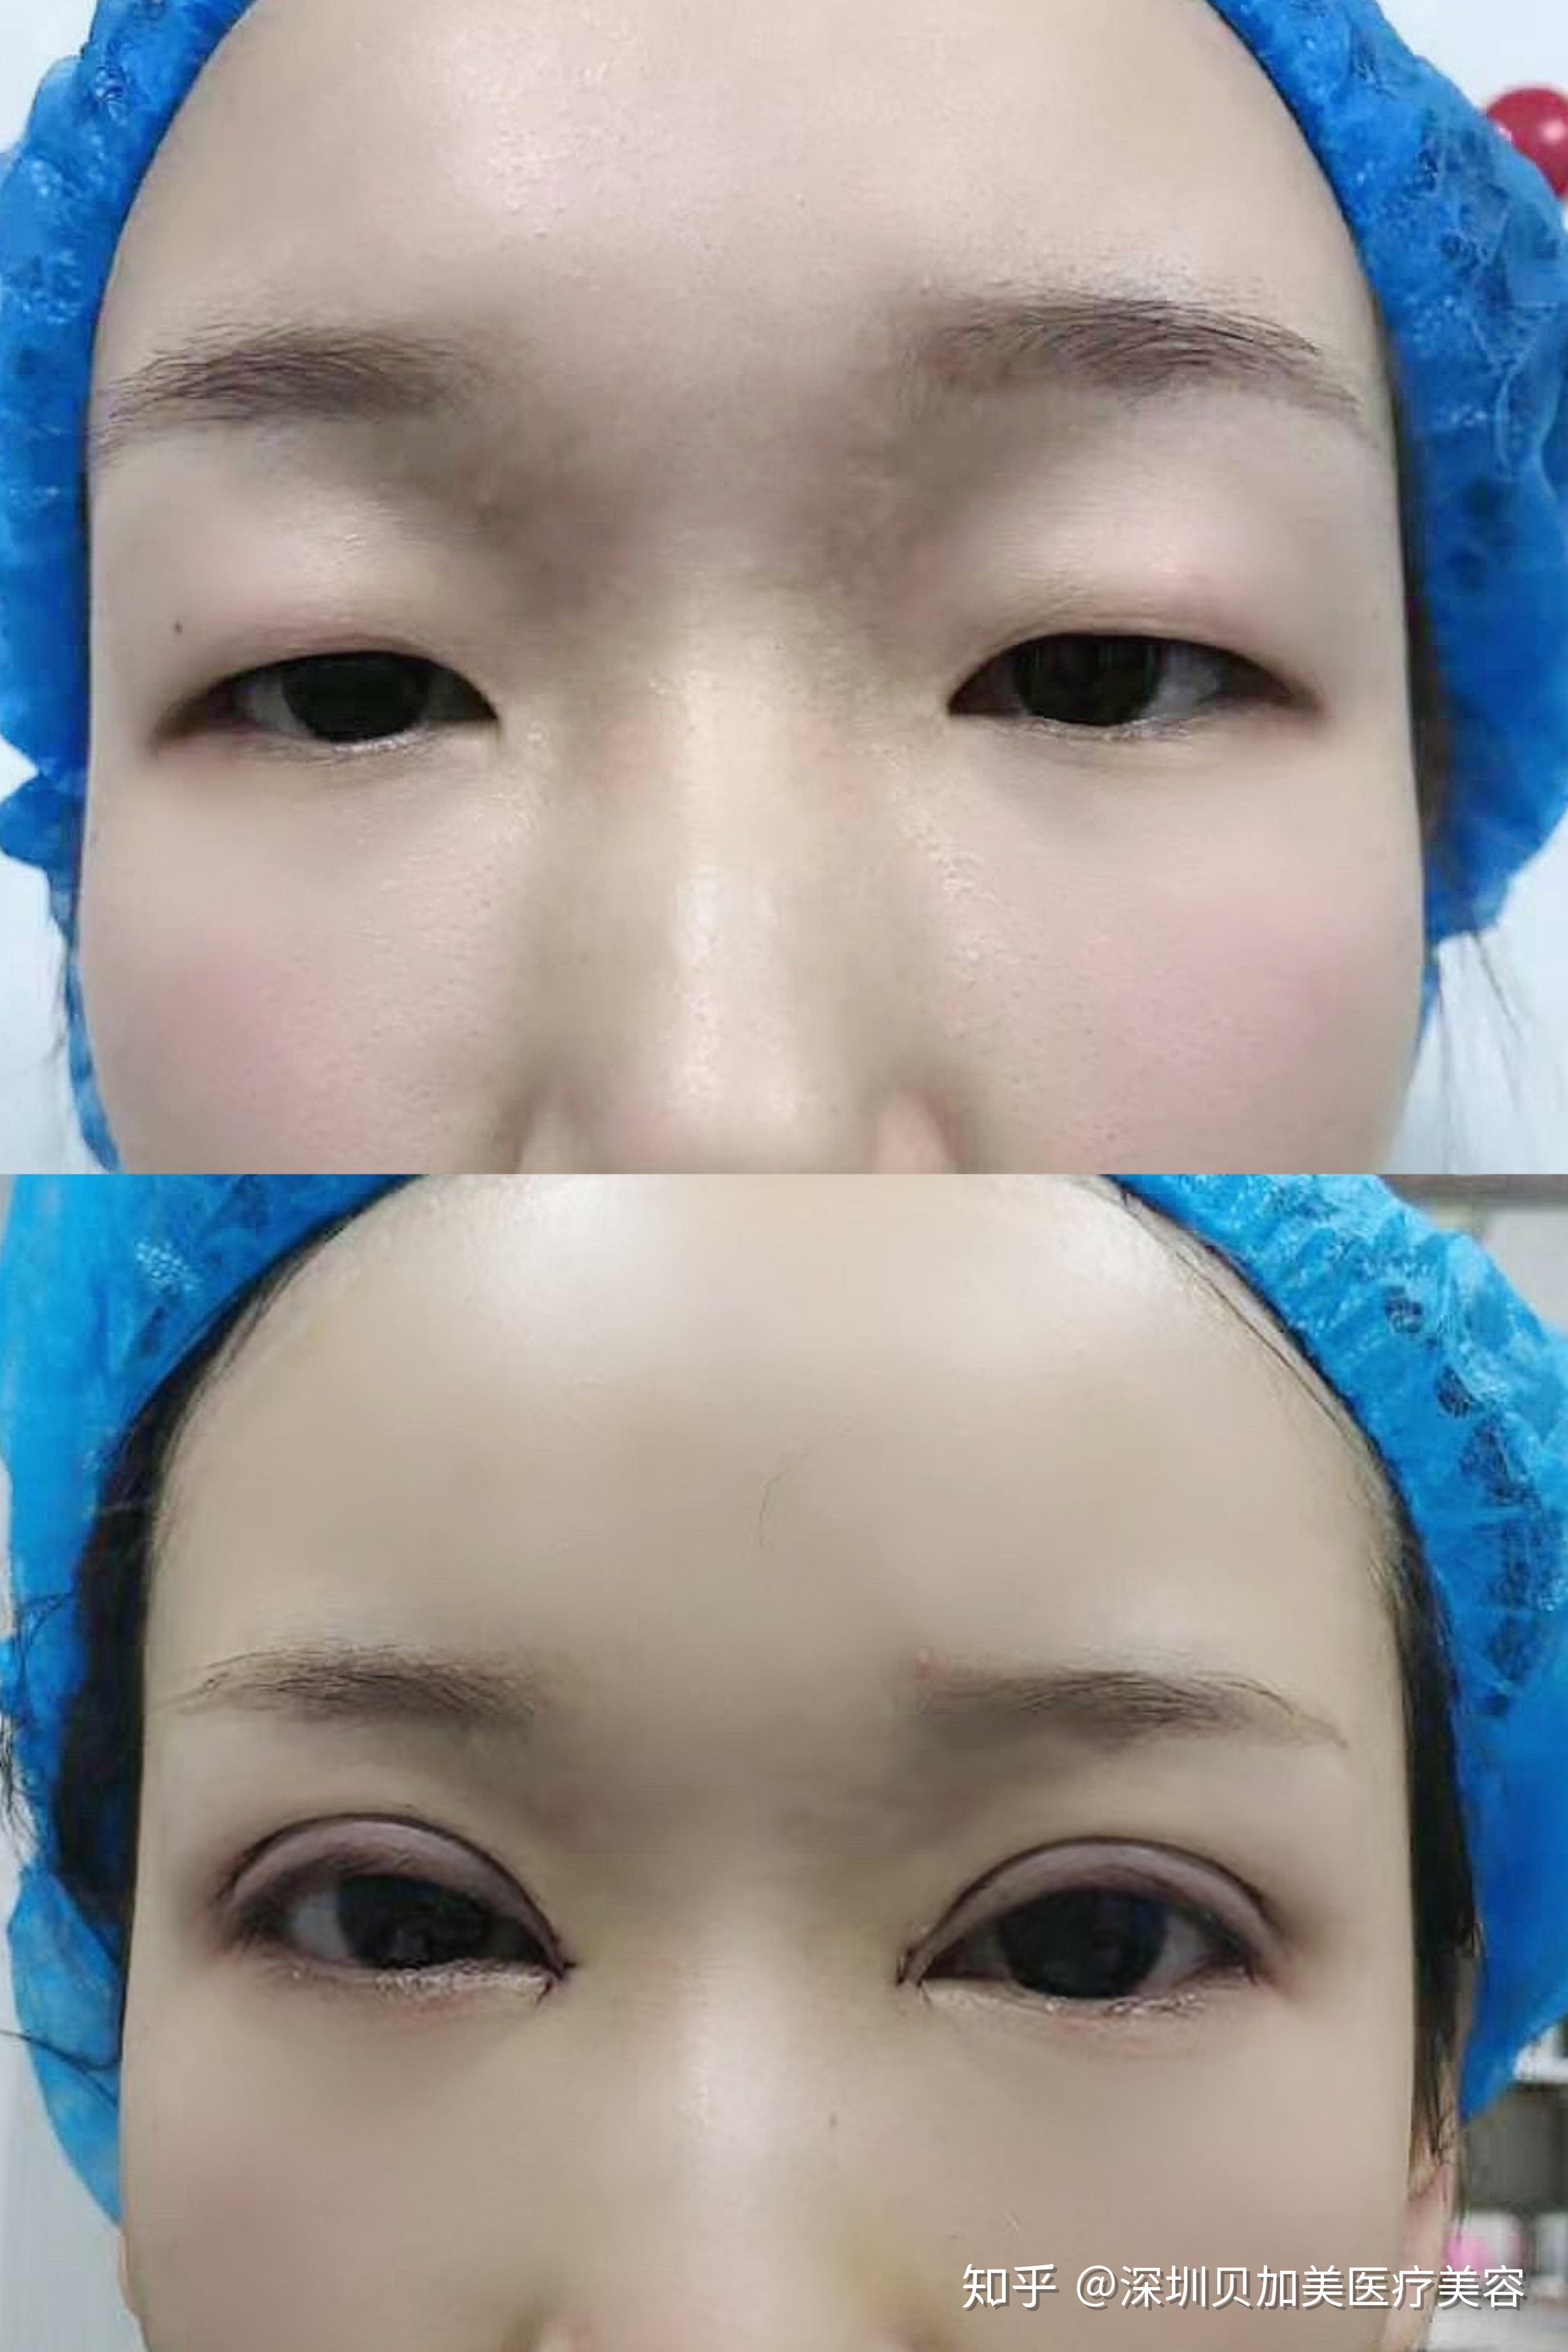 内眼角修复案例：开内眼角后出现了豁口、圆钝、疤痕怎么办？通过解剖复位还原初眼状态 - 知乎